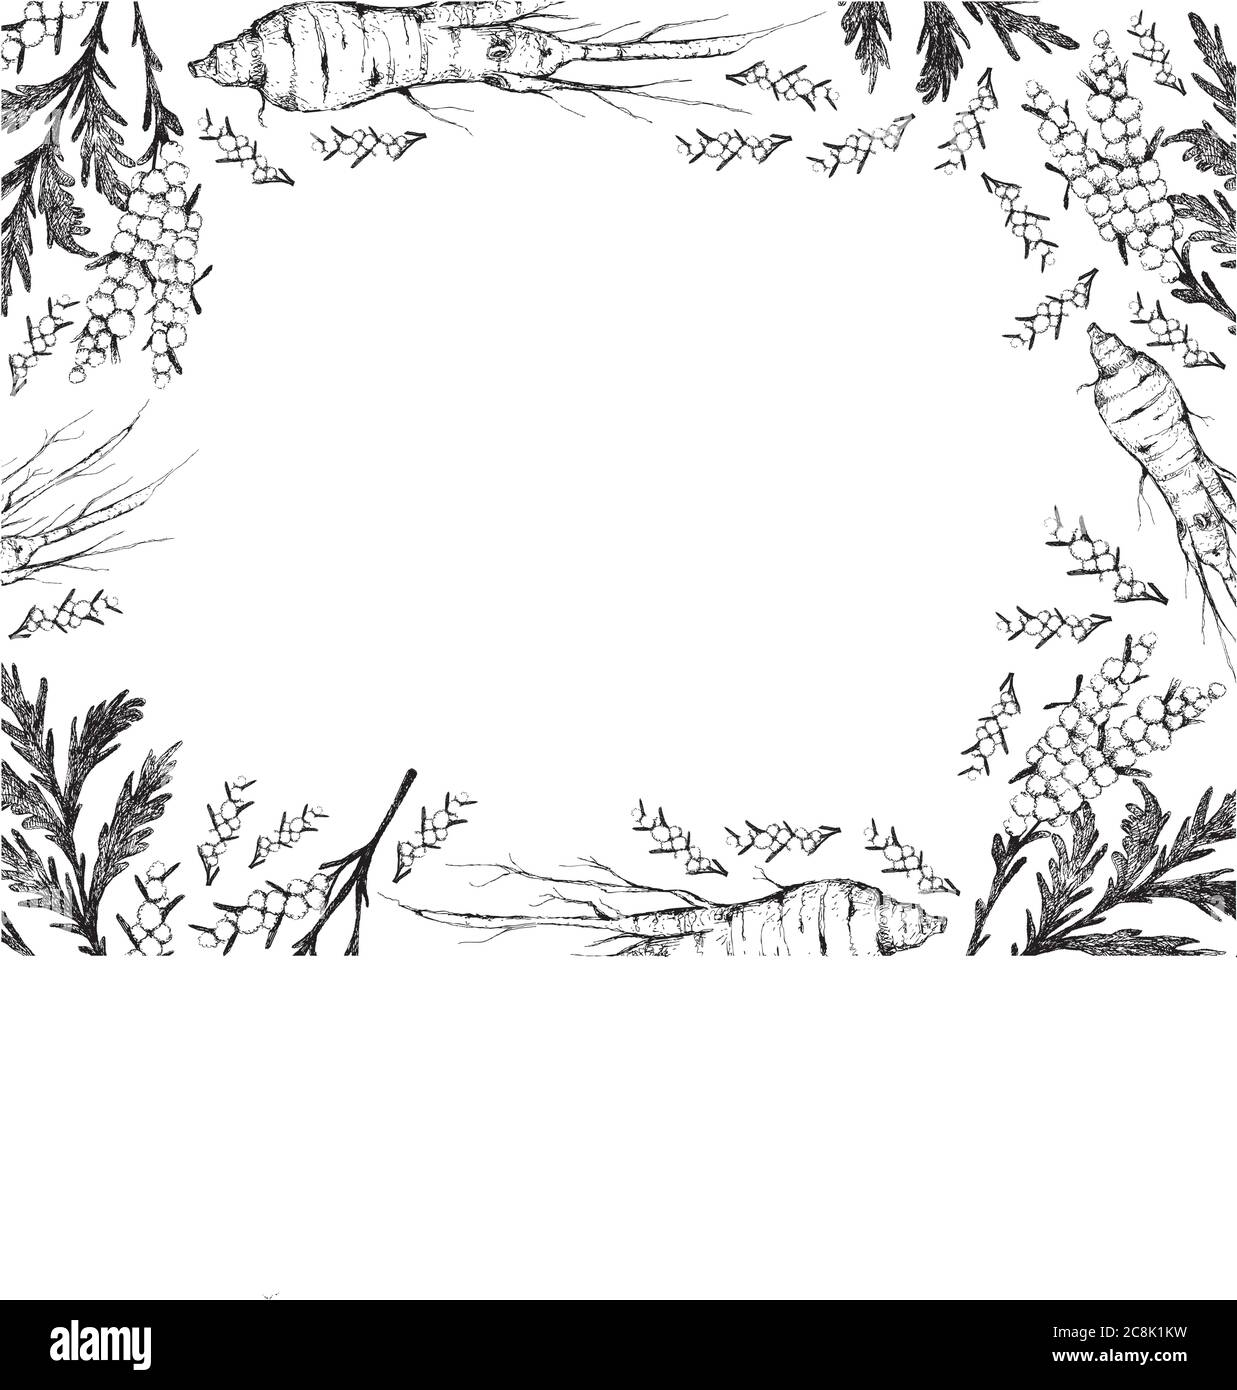 Kräuterblume und Pflanze, handgezeichnete Illustration Rahmen von Artemisia Absinthium oder Wermut Pflanzen und Ginseng Wurzel für die traditionelle Medizin verwendet. Stock Vektor